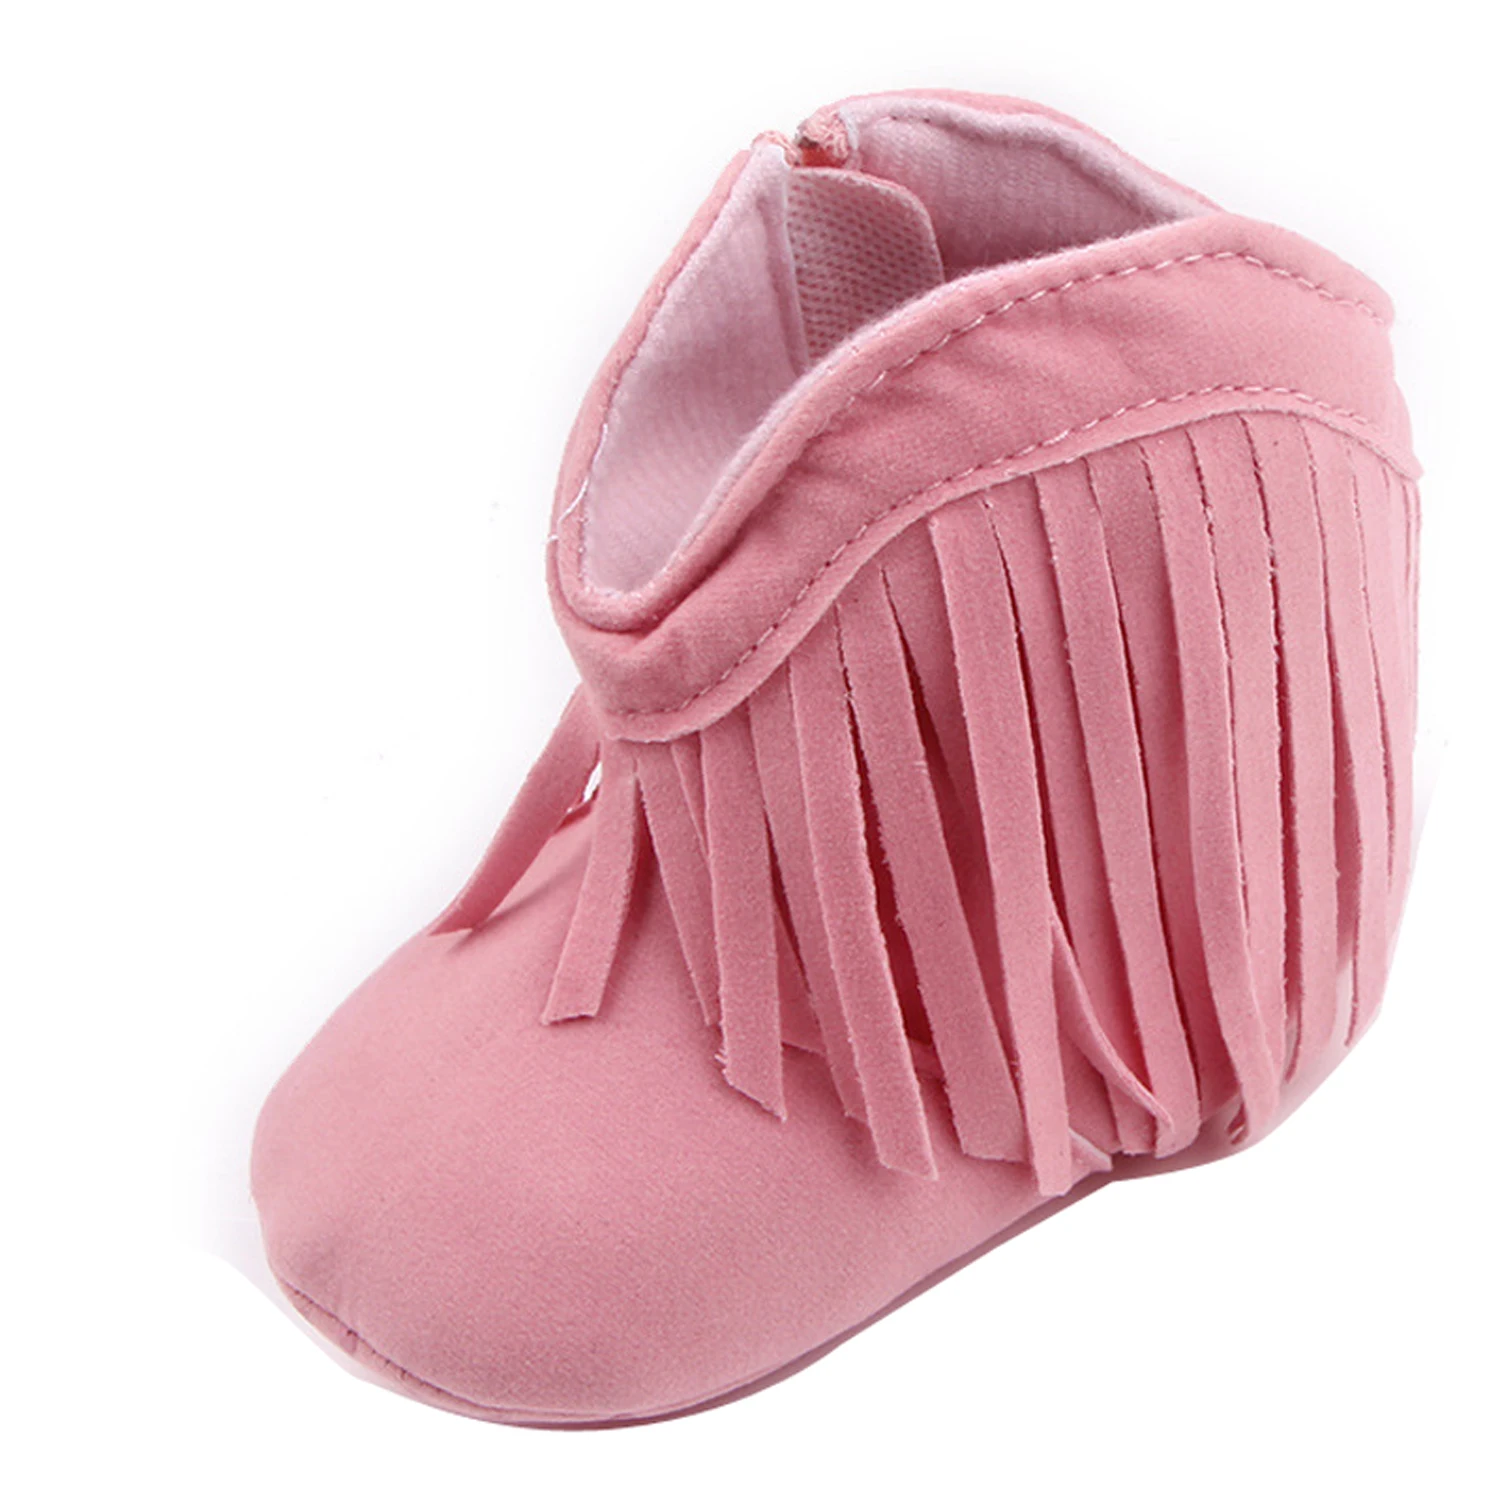 Пинетки для новорожденных мальчиков и девочек; классические зимние ботинки с бахромой для отдыха; ботинки для маленькой принцессы; рождественские подарки - Цвет: Розовый